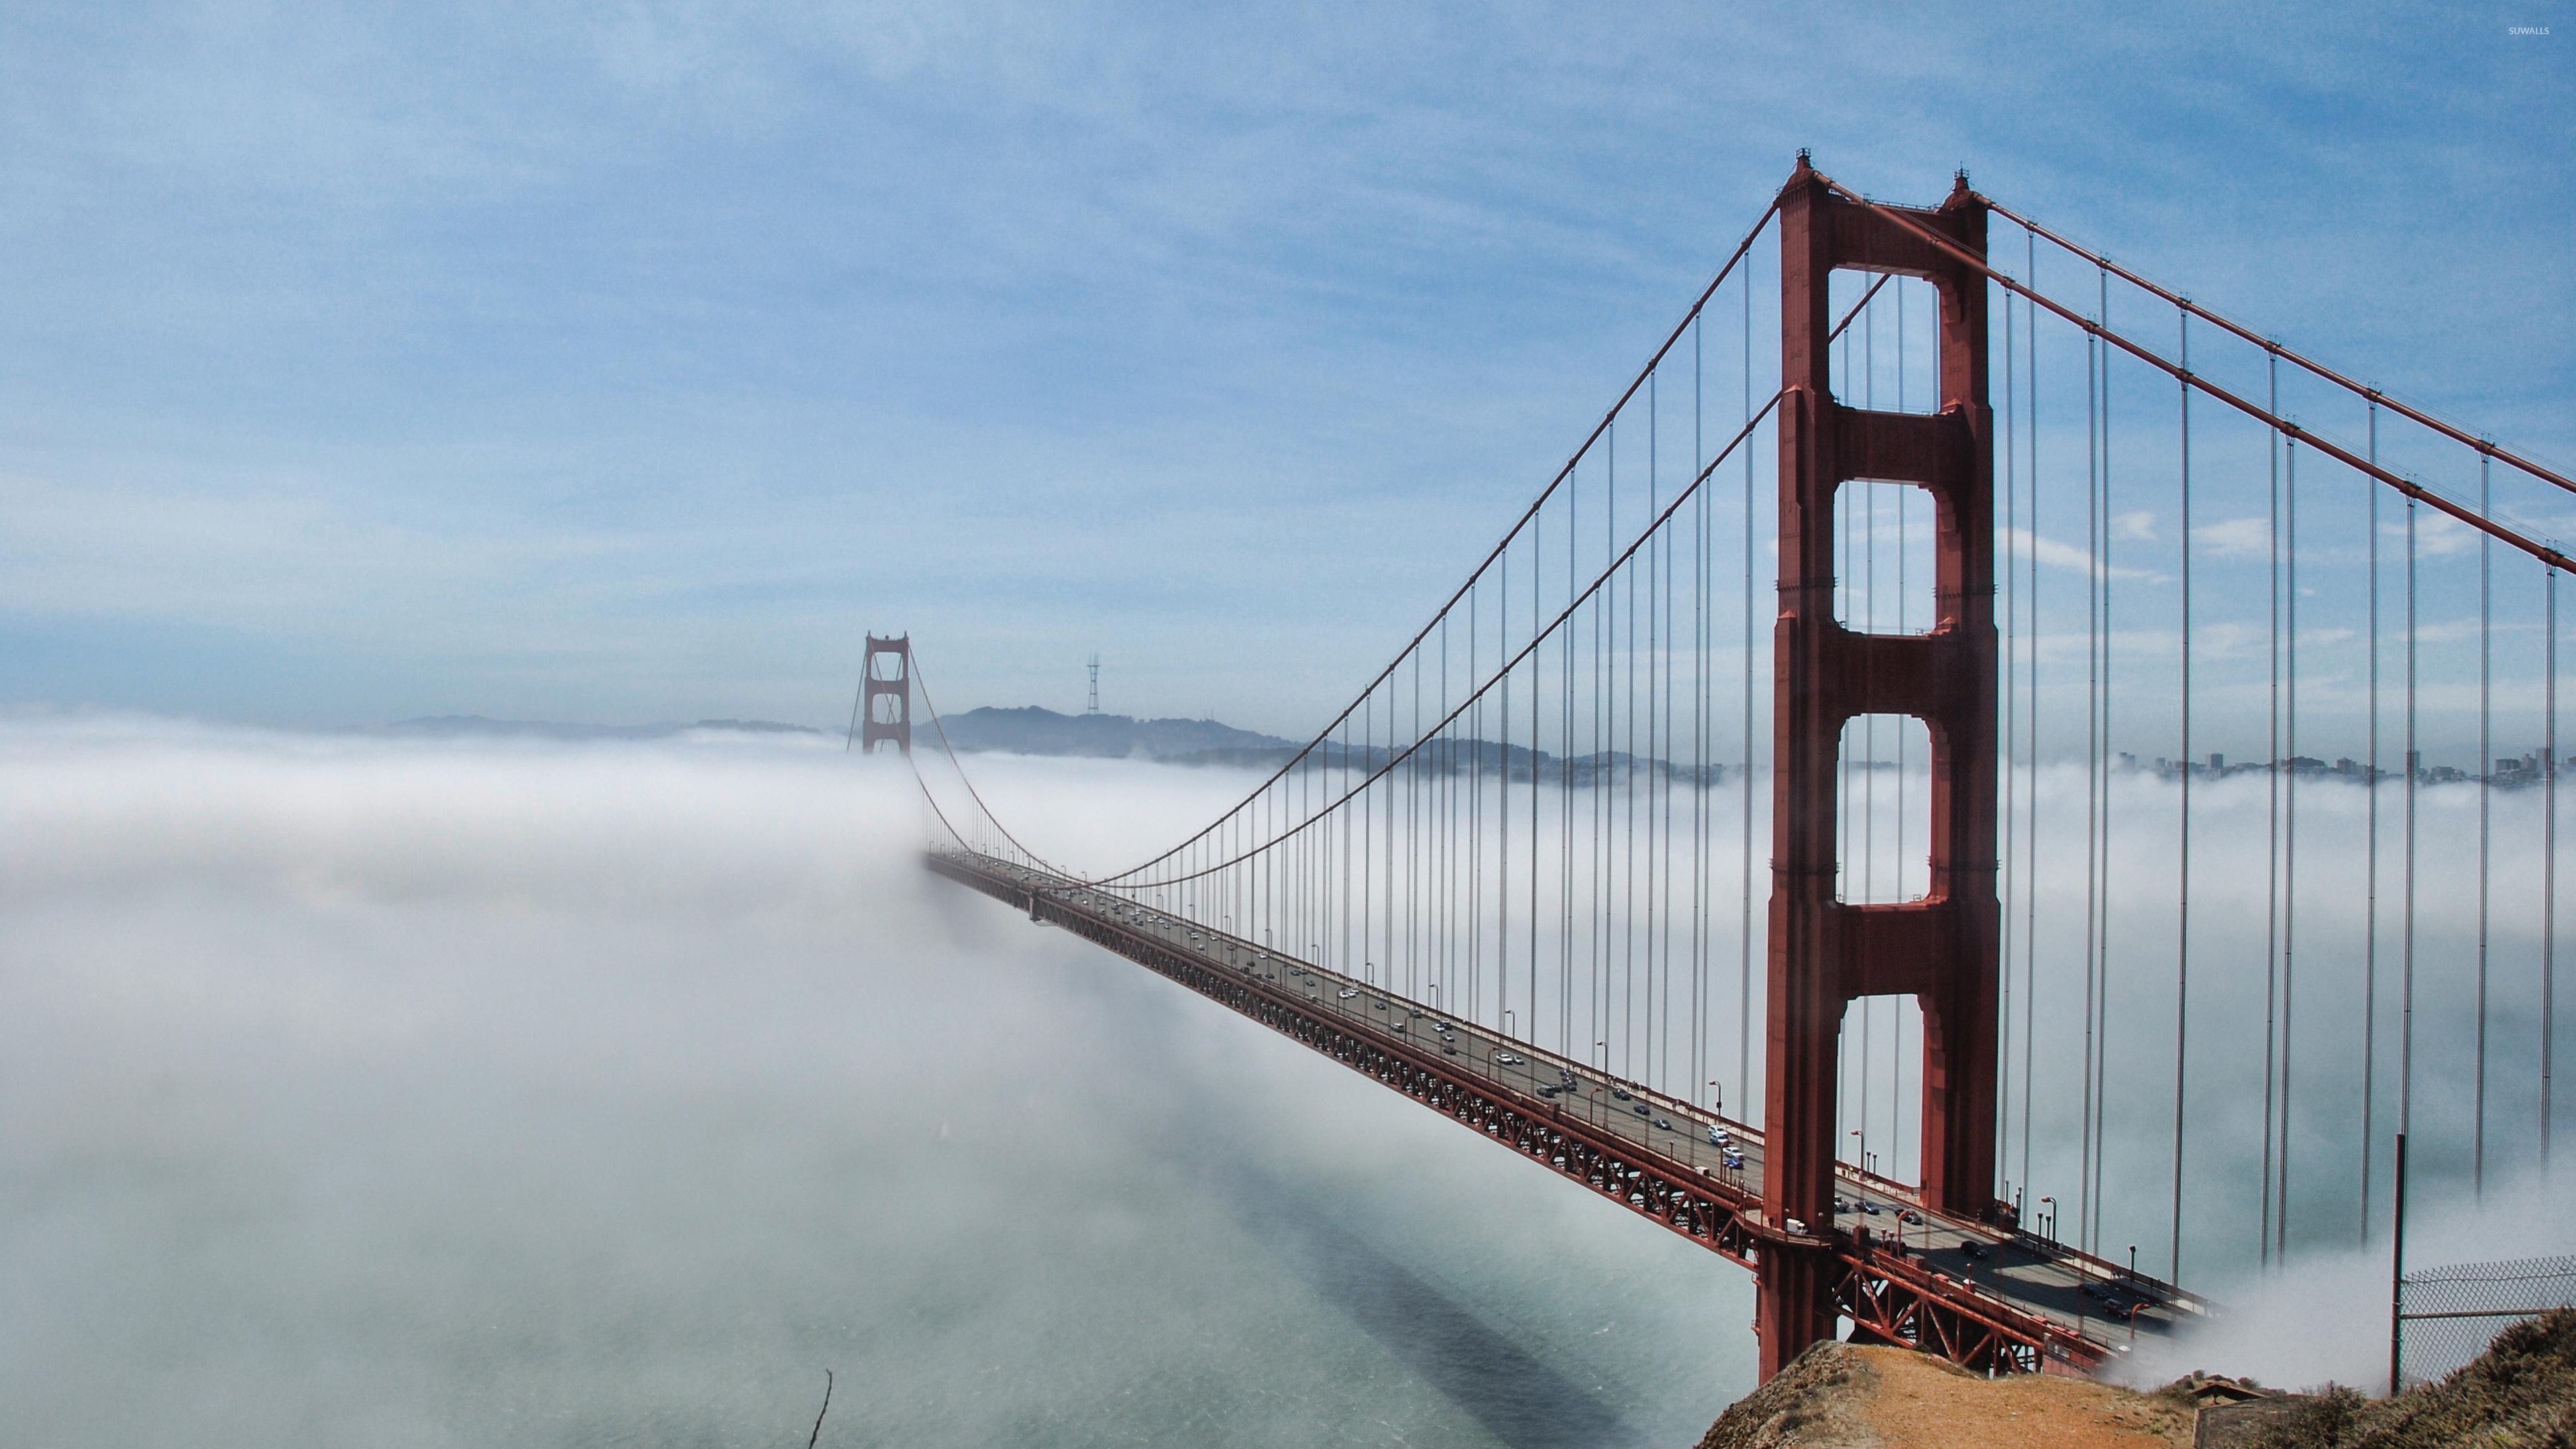 Есть слово мост. Мост золотые ворота в Сан-Франциско. Голден гейт бридж. Мост золотые ворота в Сан-Франциско 4к фото. Golden Gate Bridge мост.